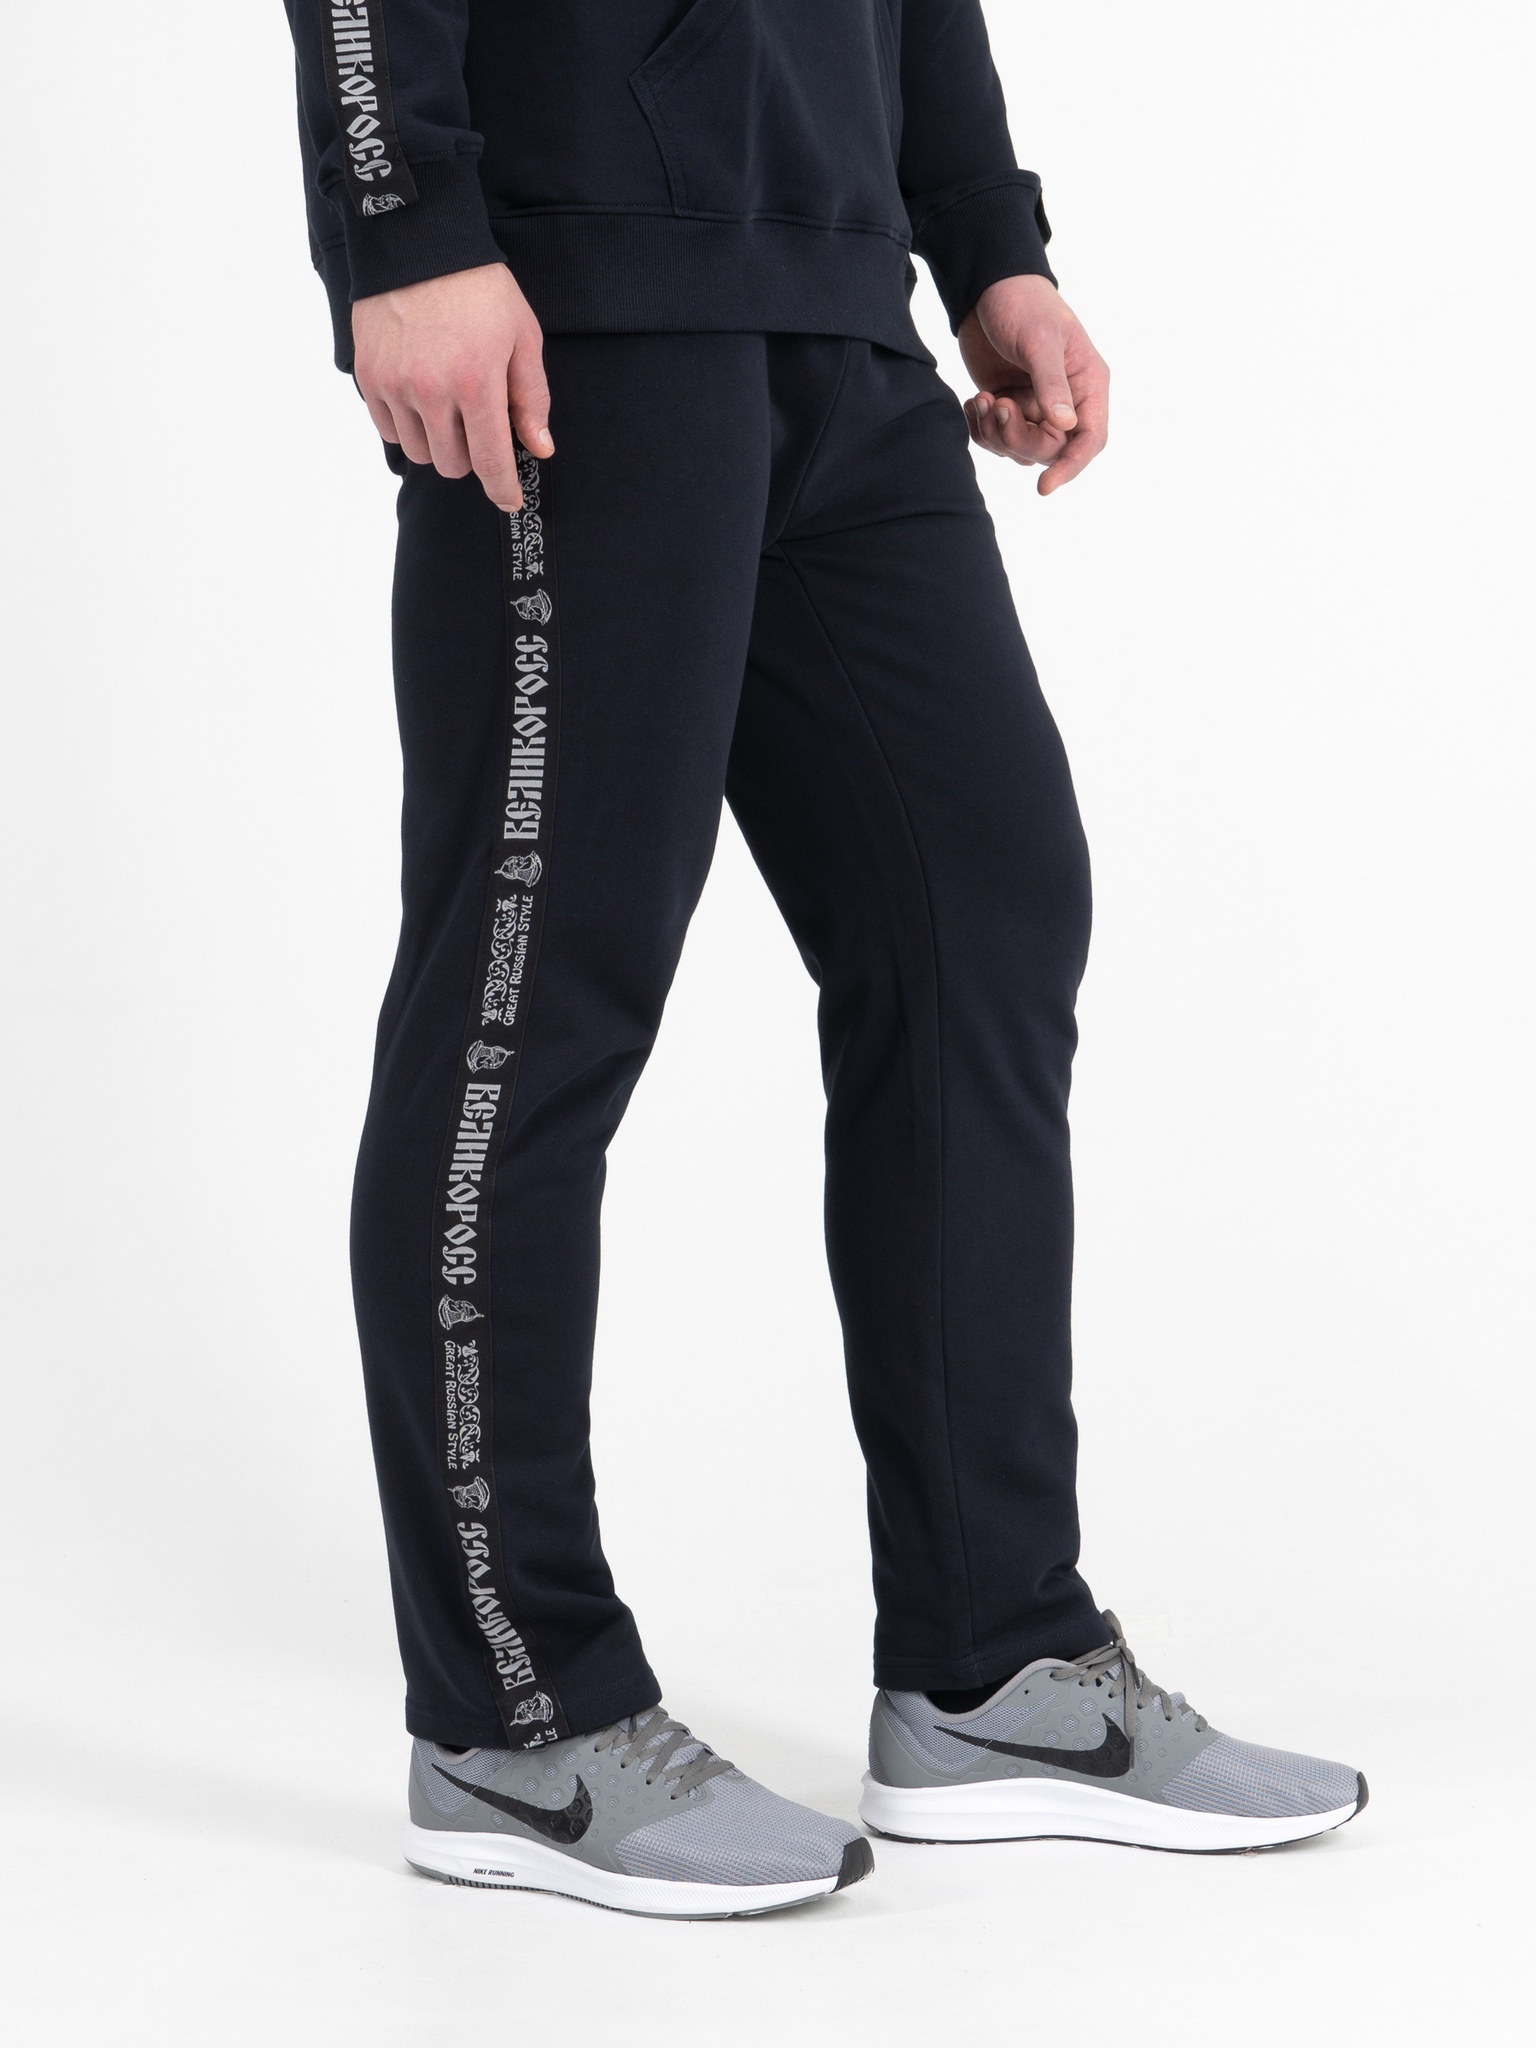 фото Спортивные брюки мужские великоросс bm синие 60 ru